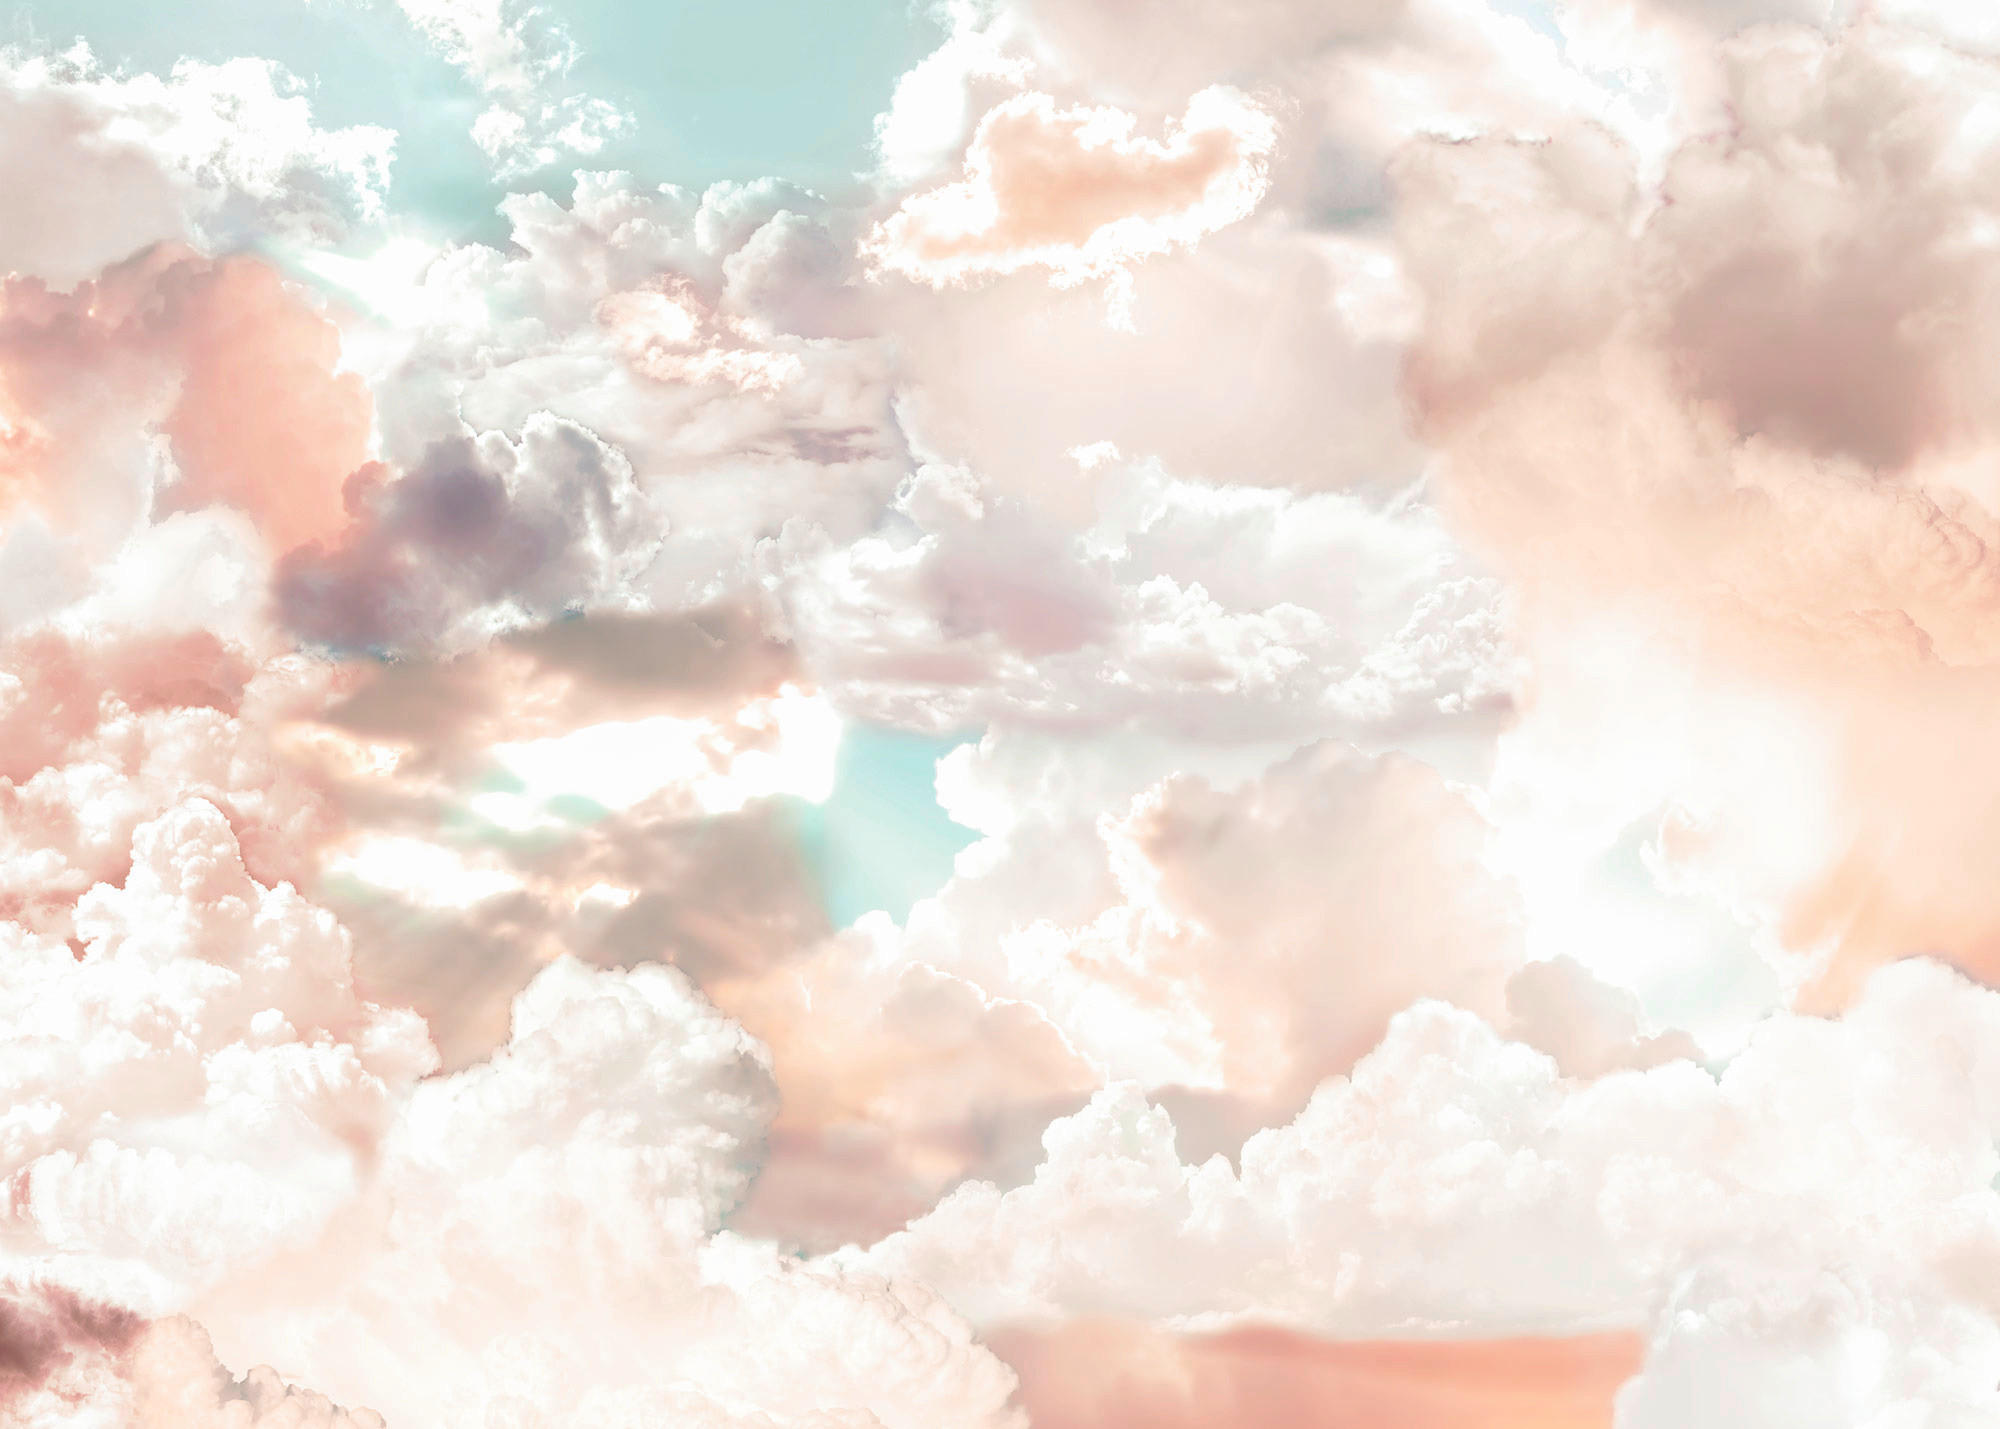 Komar Fototapete Mellow Clouds B/L: ca. 350x250 cm